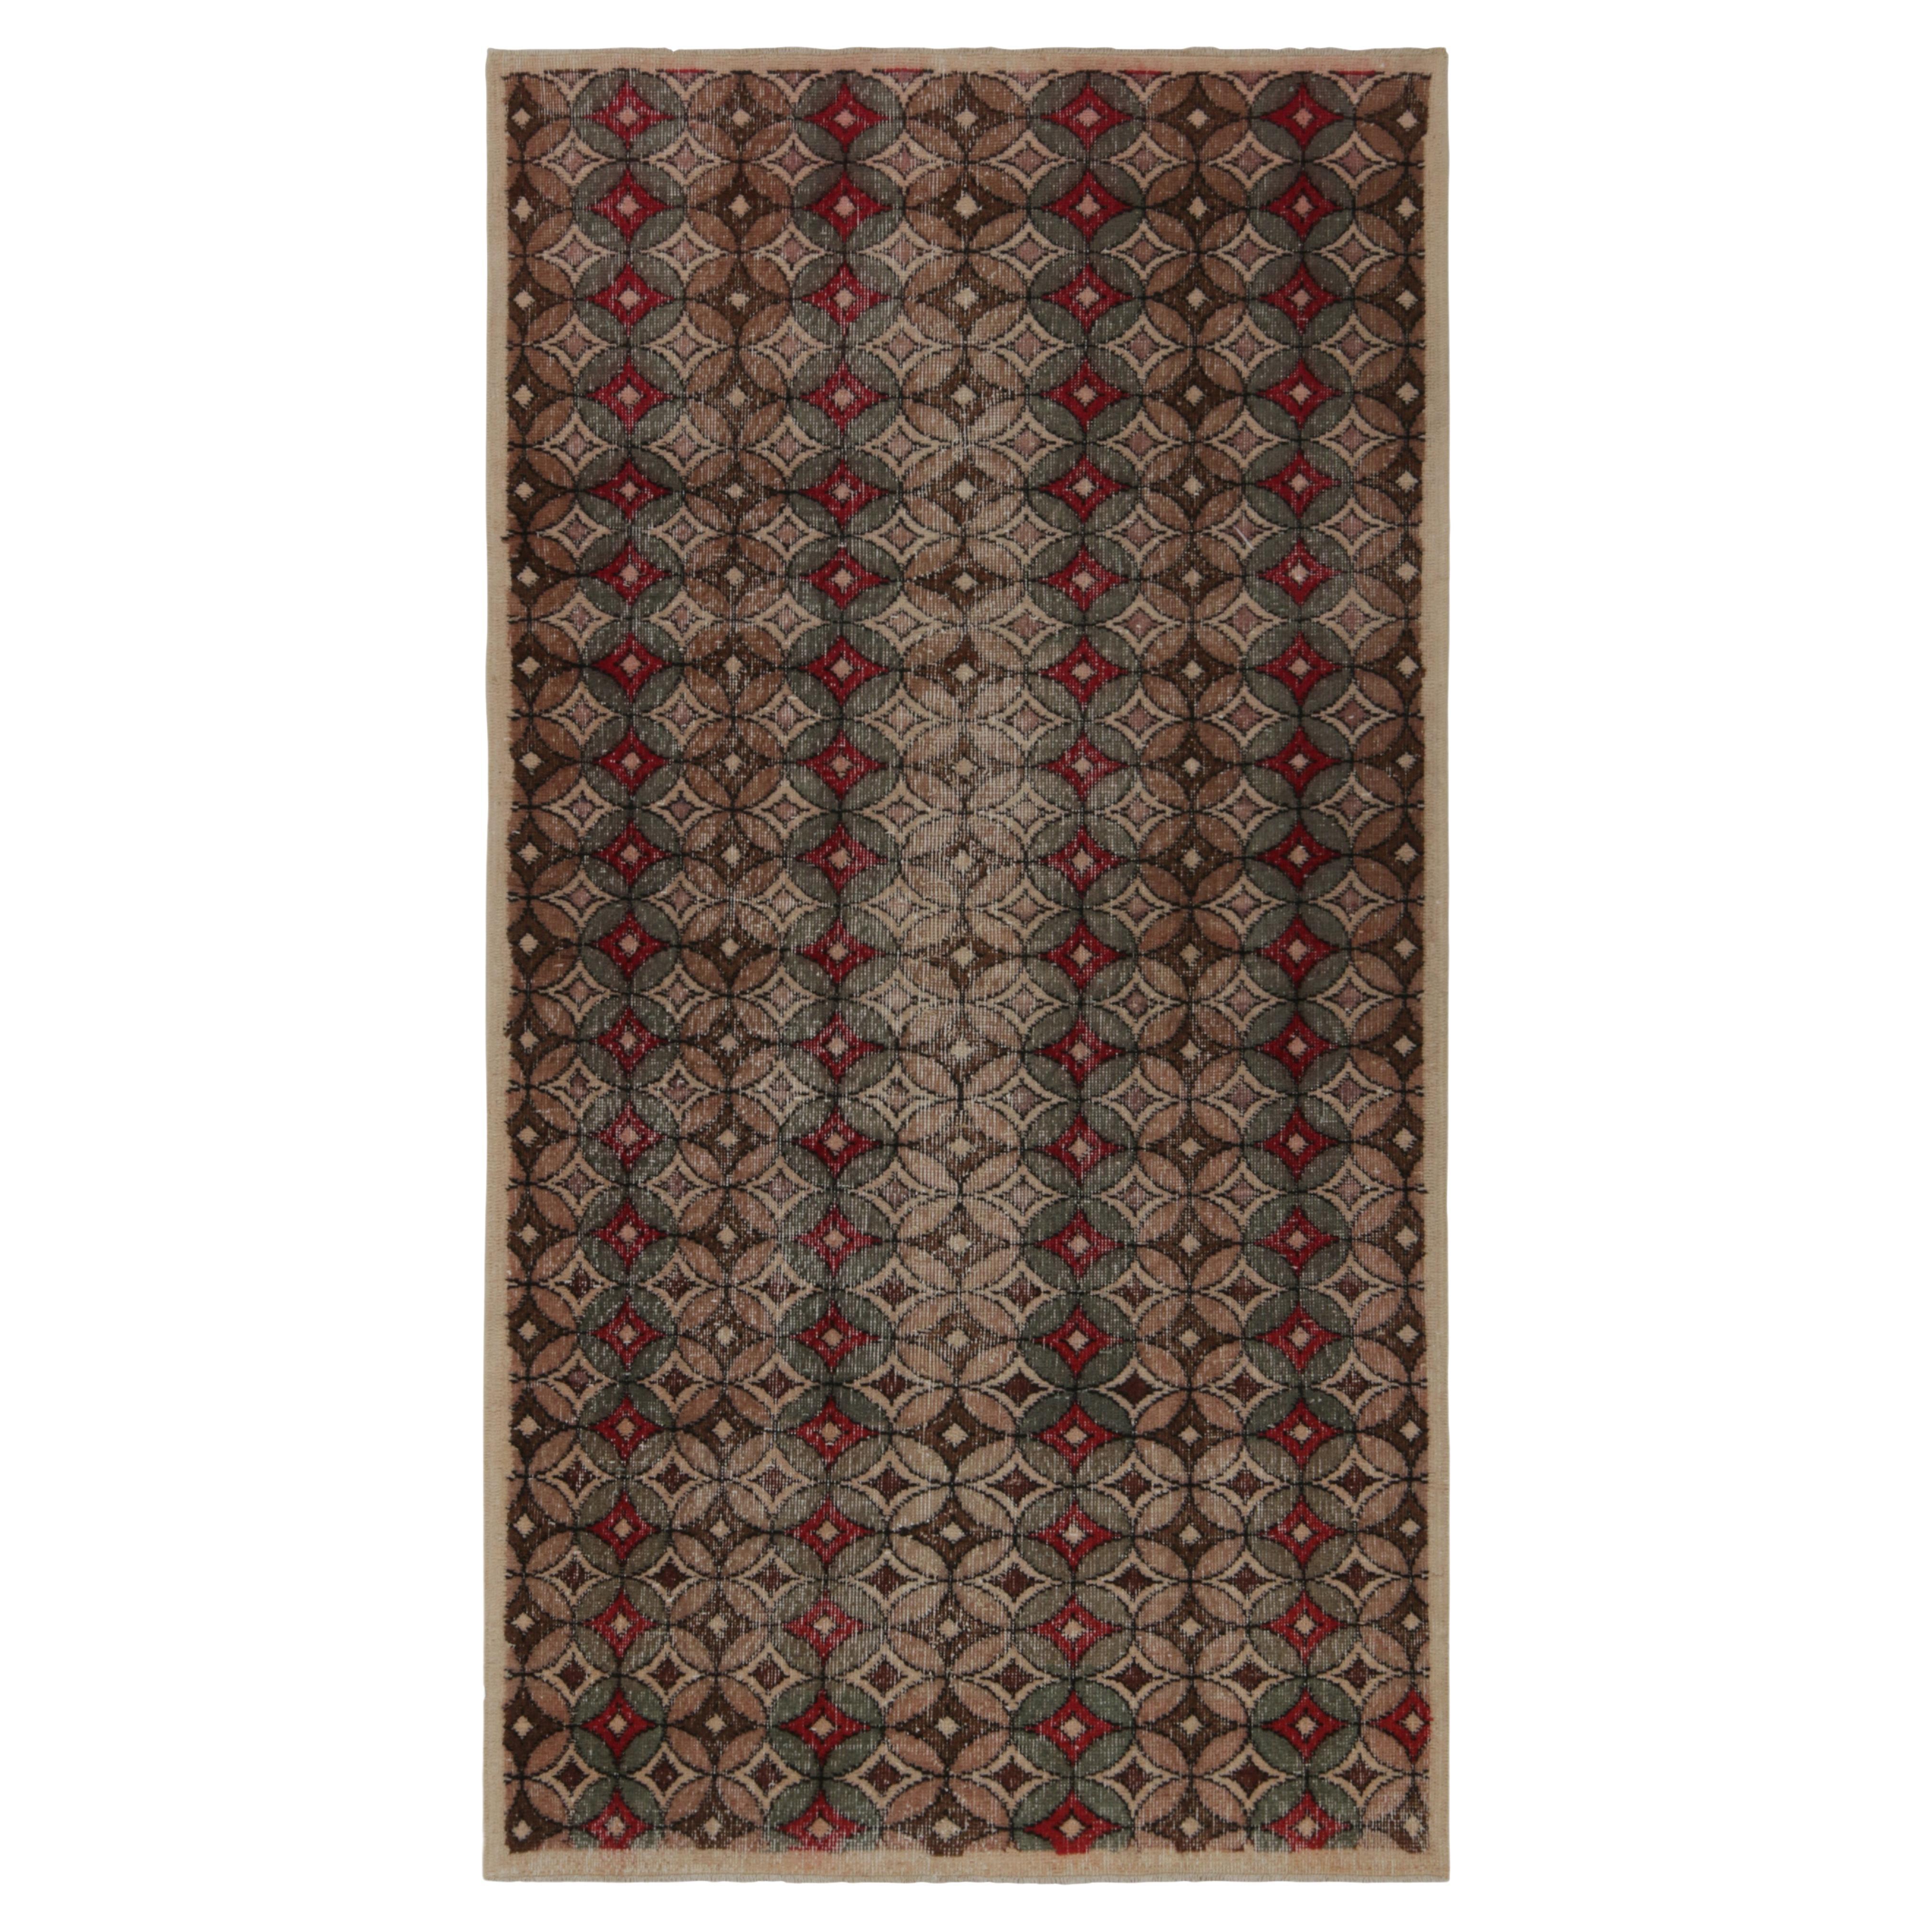 Vintage-Teppich im Used-Stil aus den 1960er Jahren in Beige-Braun mit Deko-Mustern von Teppich & Kelim